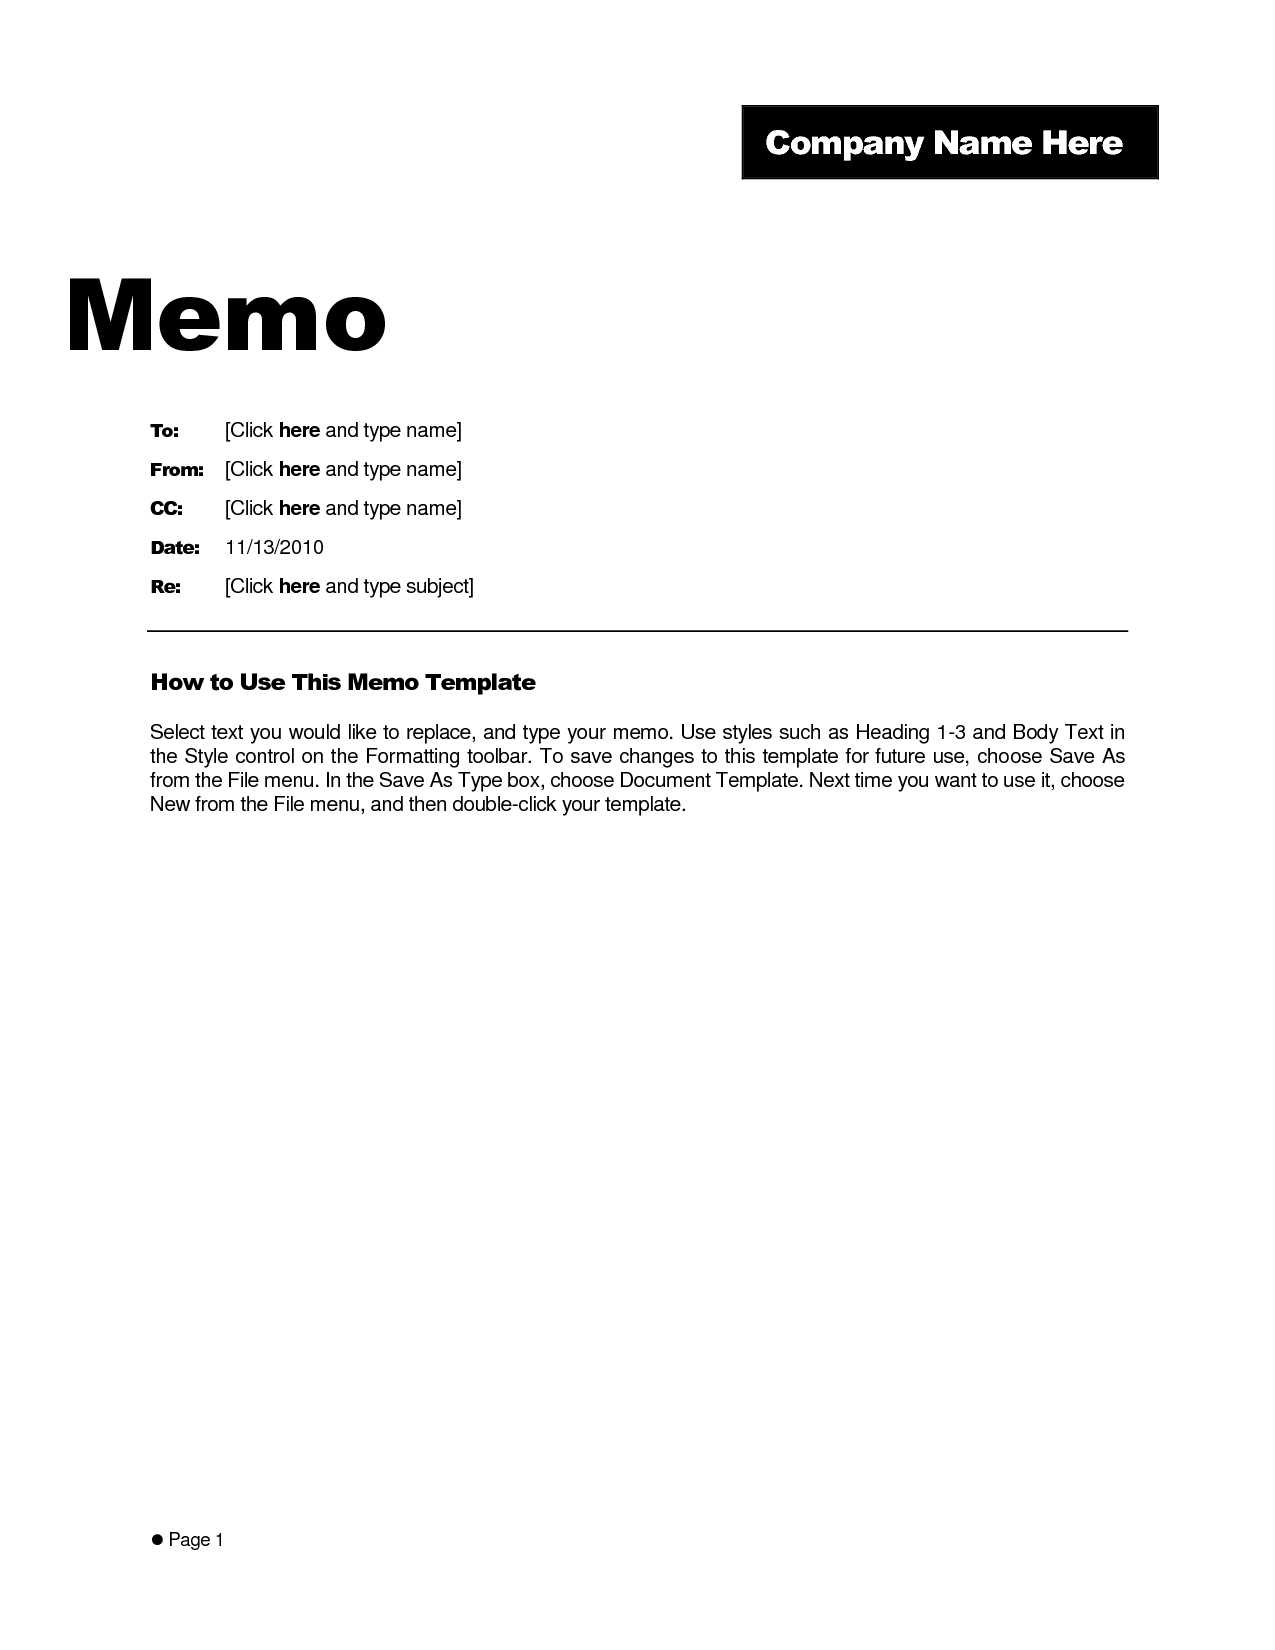 Free Memo Template Word 2010 – Kerren For Memo Template Word 2013